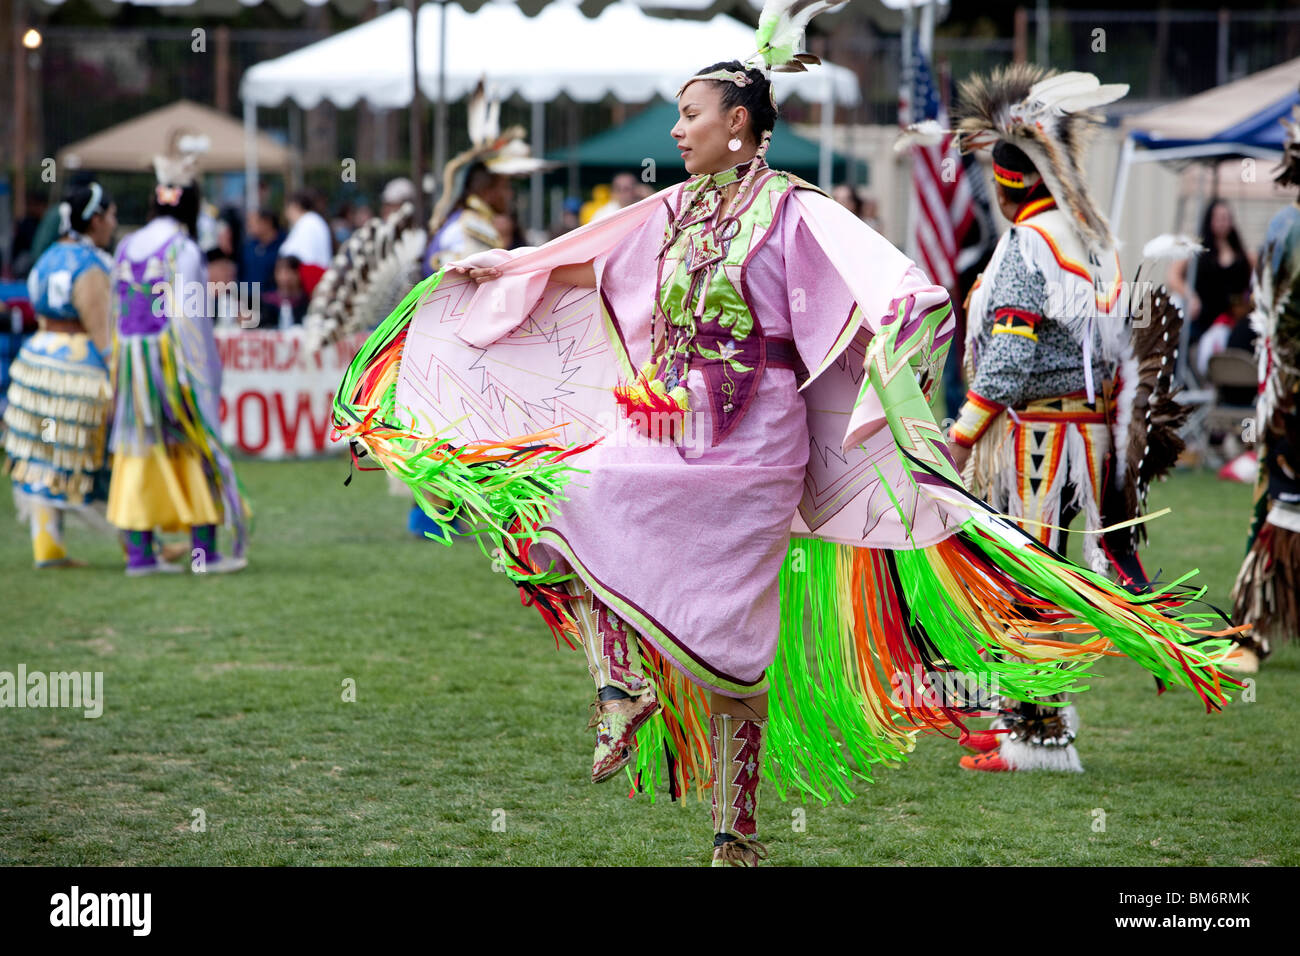 LOS ANGELES - 2 maggio: American Indian woman dancing al XXIV UCLA annuale Pow Wow a Los Angeles il 2 maggio 2009. Foto Stock